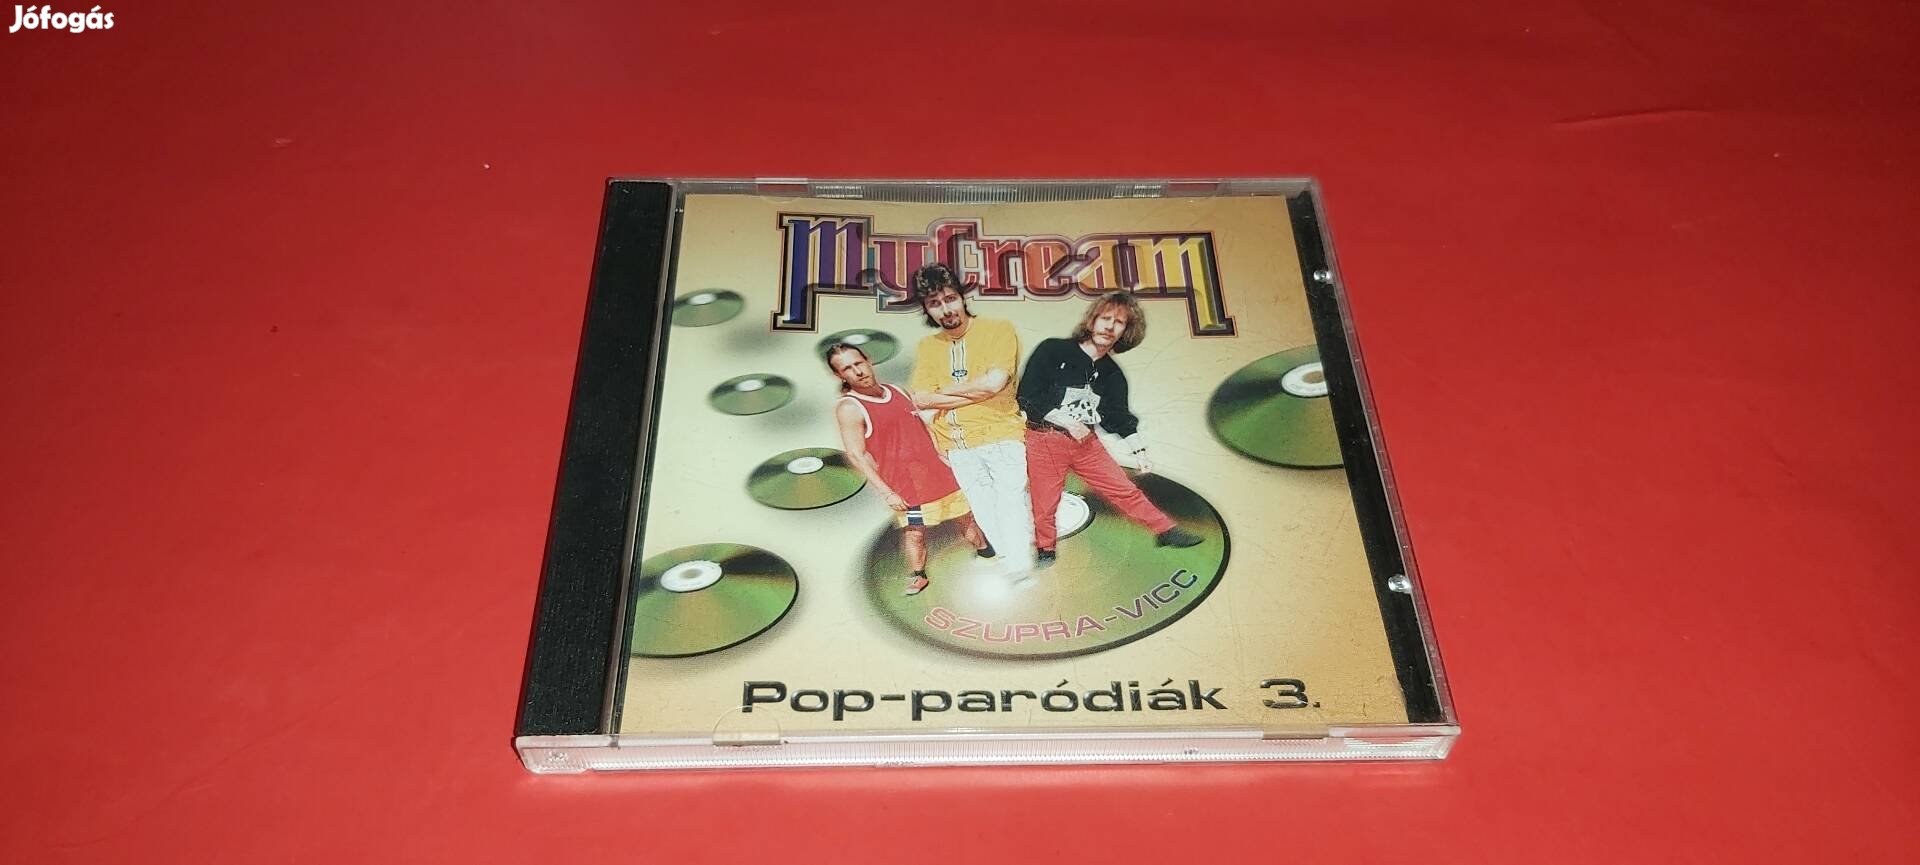 Mycream Pop-paródiák 3 Cd 1997